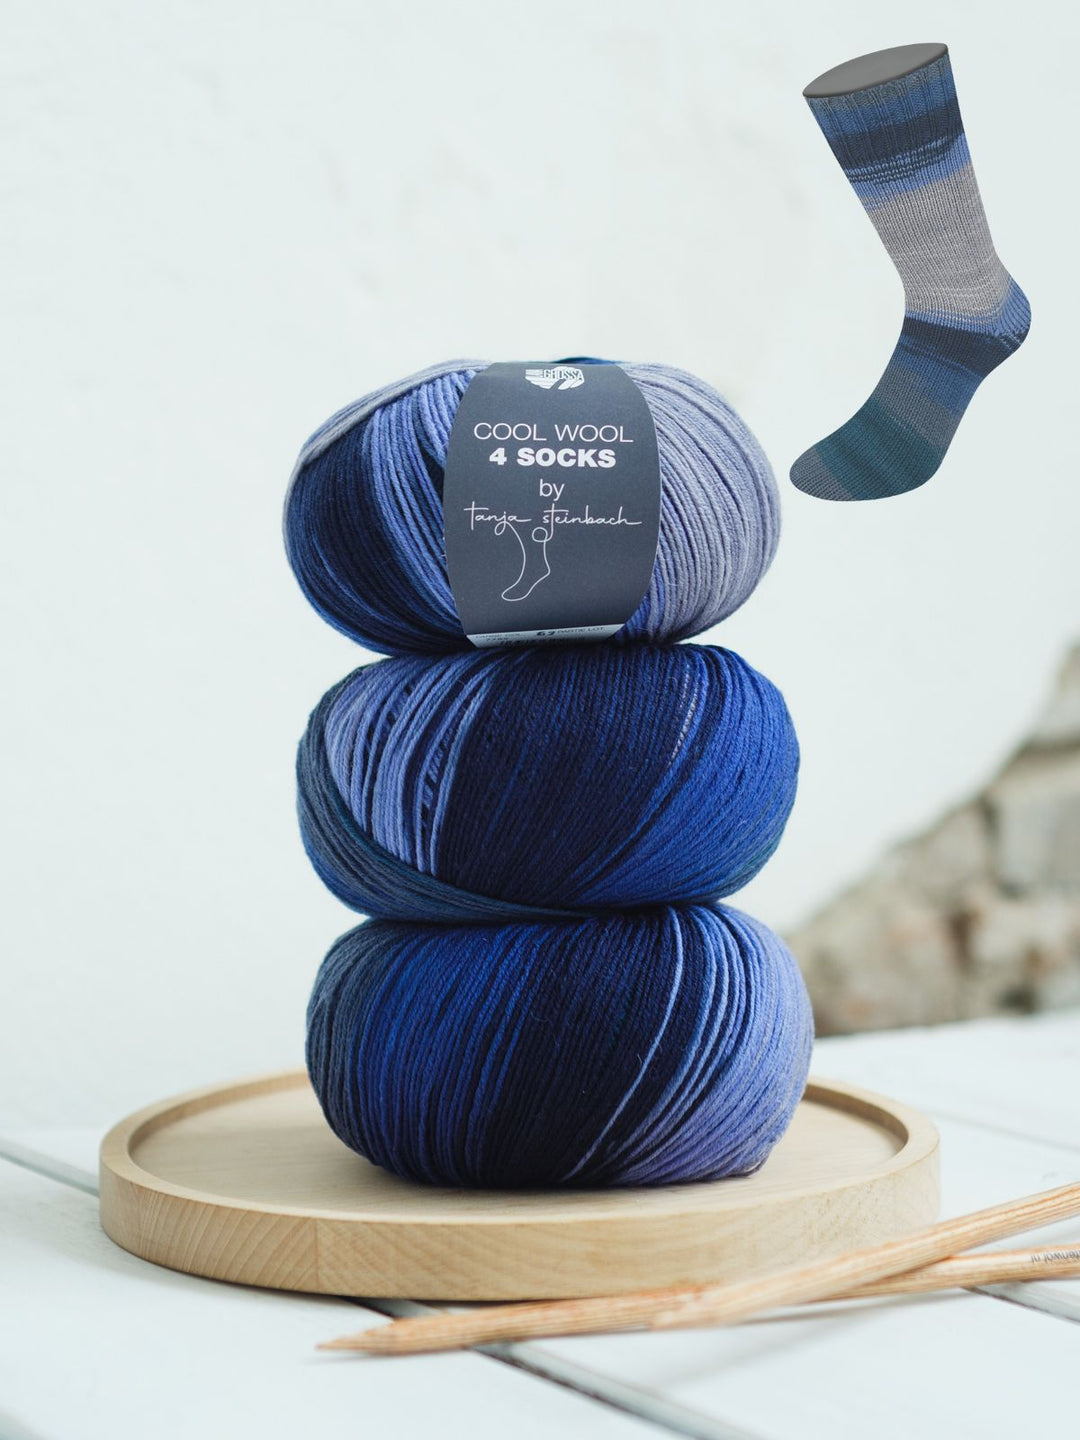 Cool Wool 4 Socks Print II 7795 Stahlblau/Hellgrau/Tintenblau/Nachtblau/Blauviolett/Grau